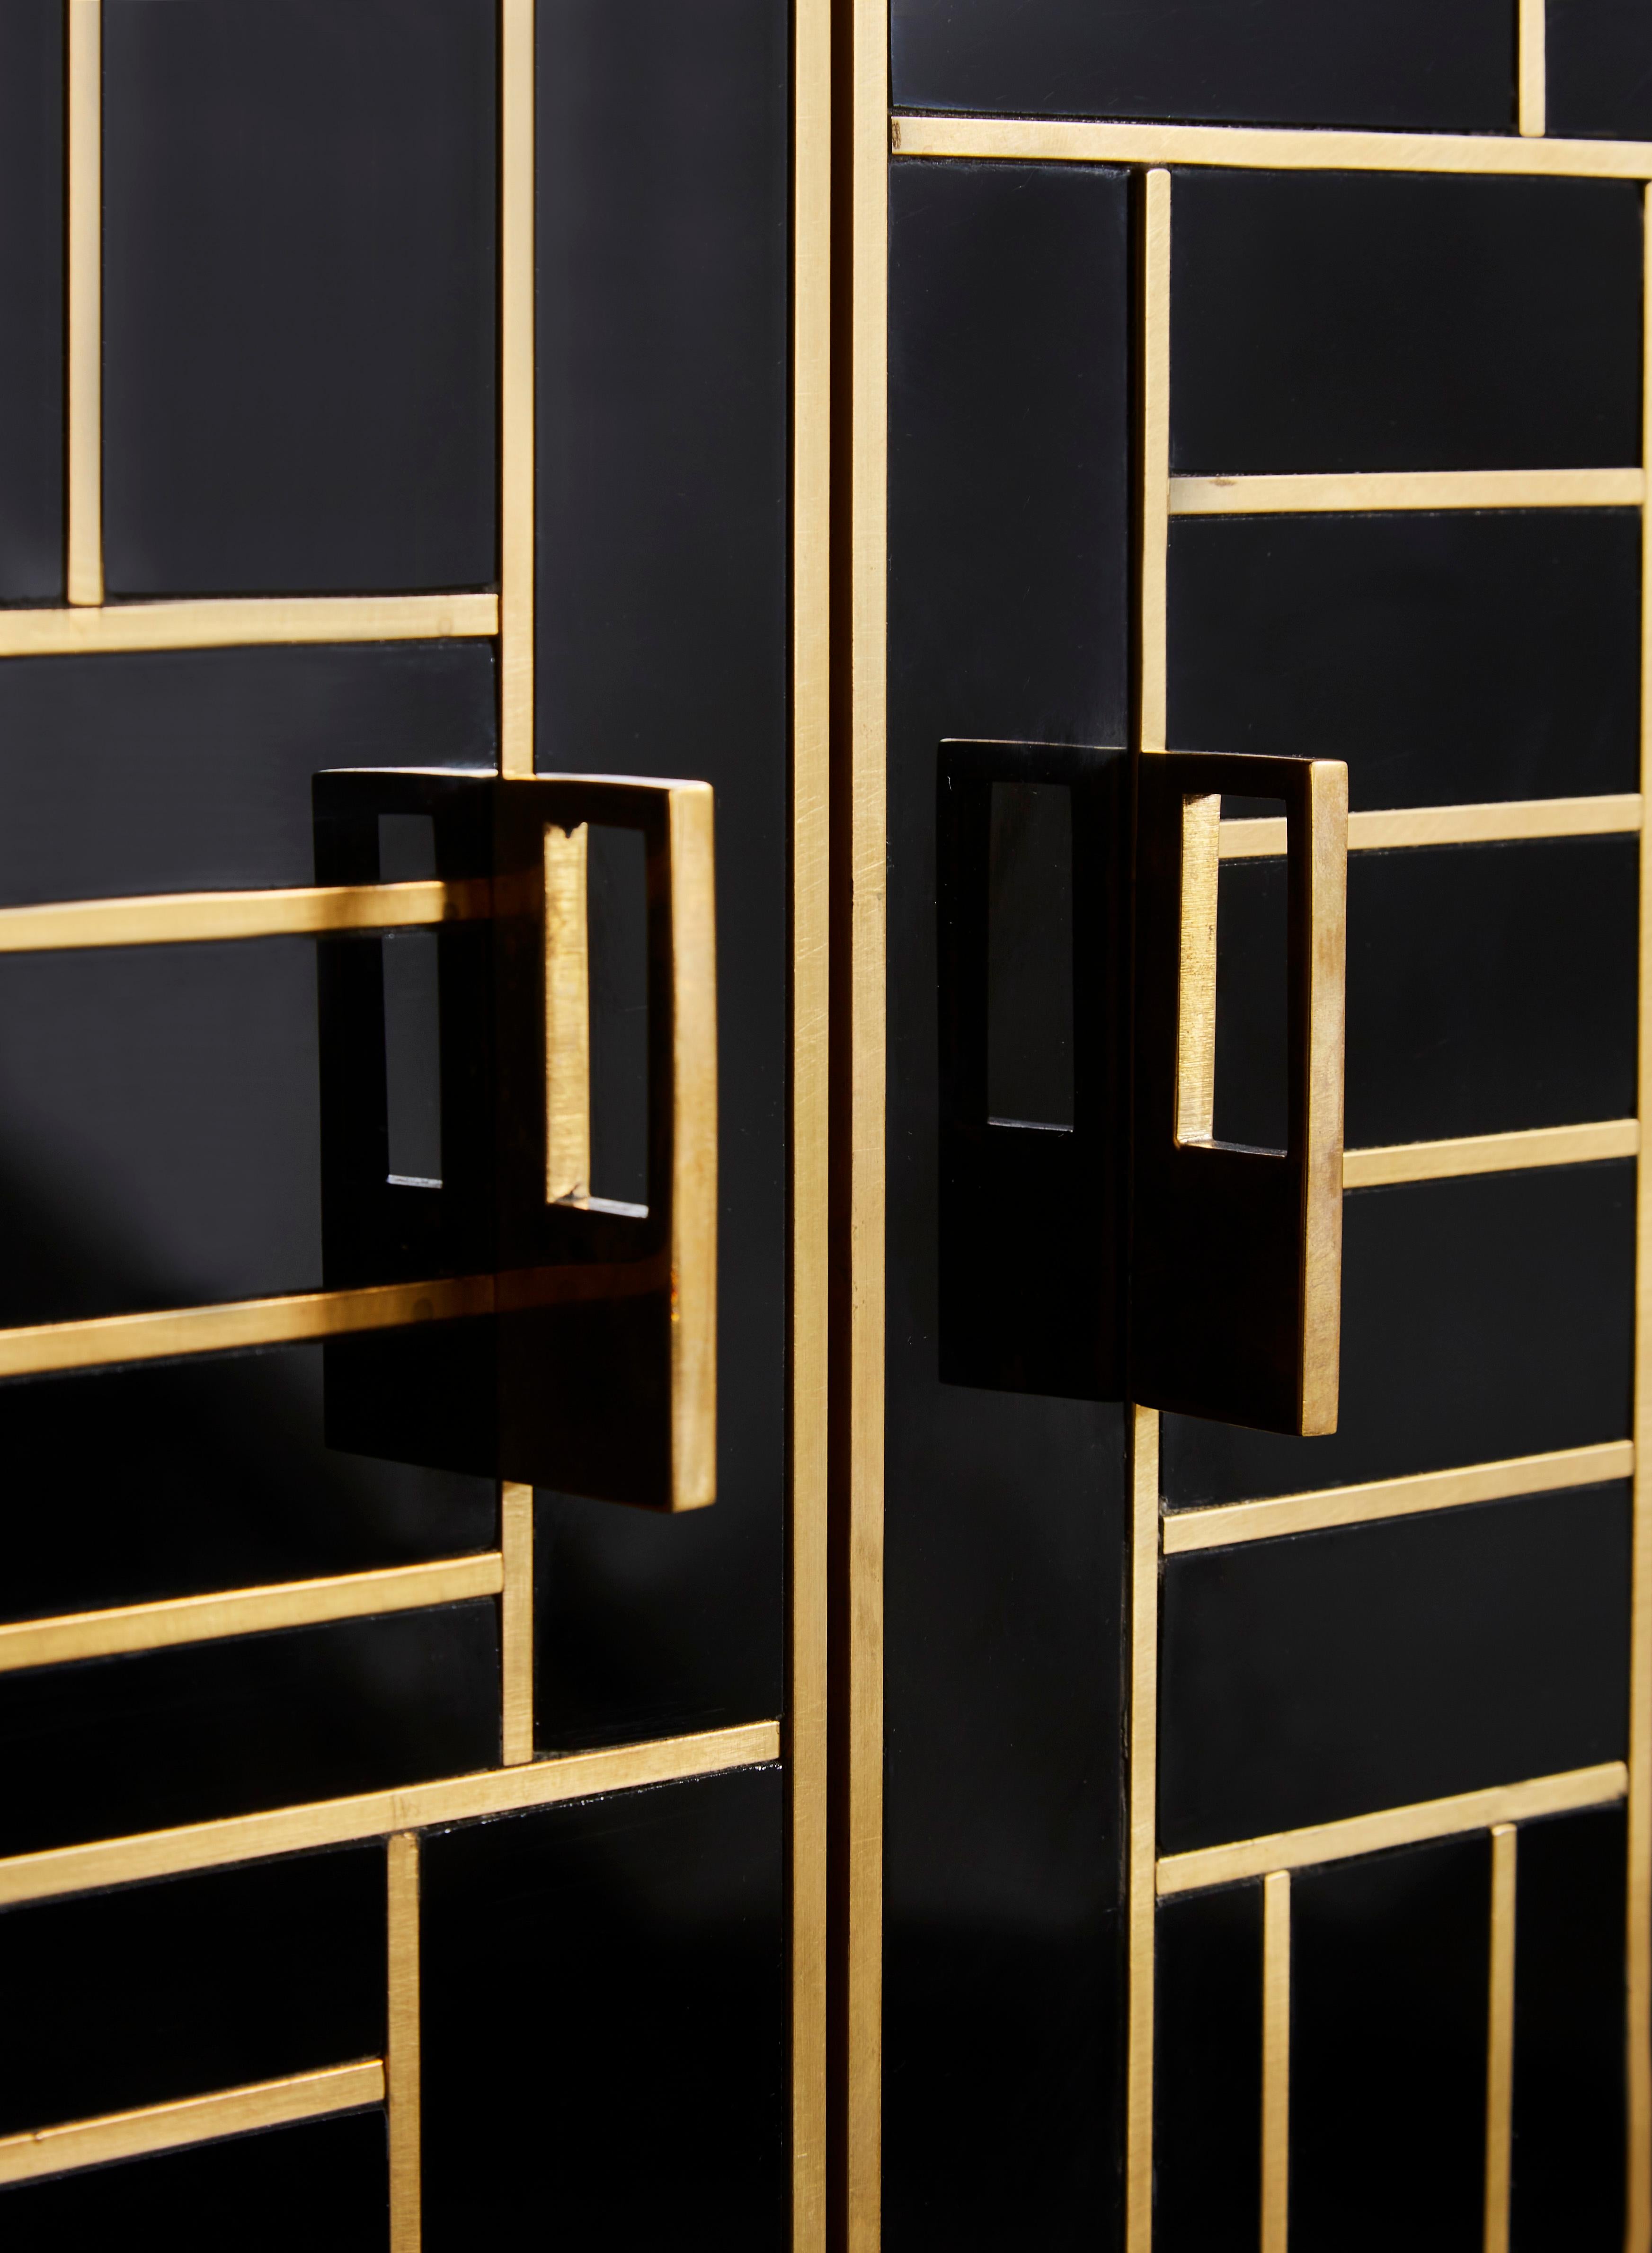 Brass Vintage Cabinet in Mirror, by Studio Glustin